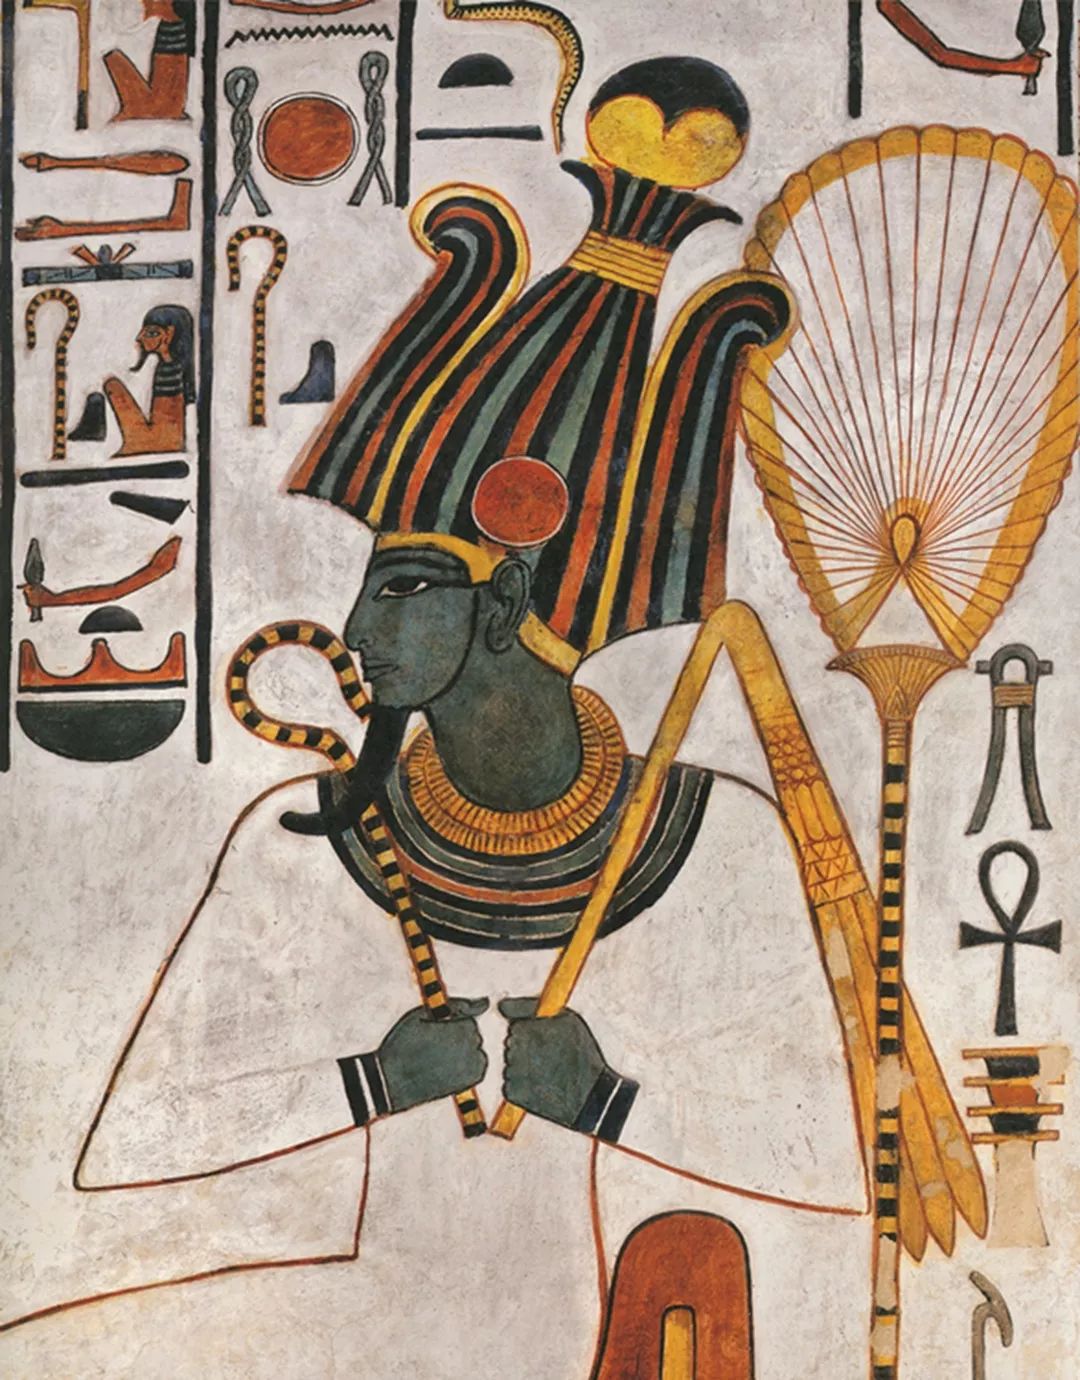 《埃及壁画》带你揭秘法老贵族生活 